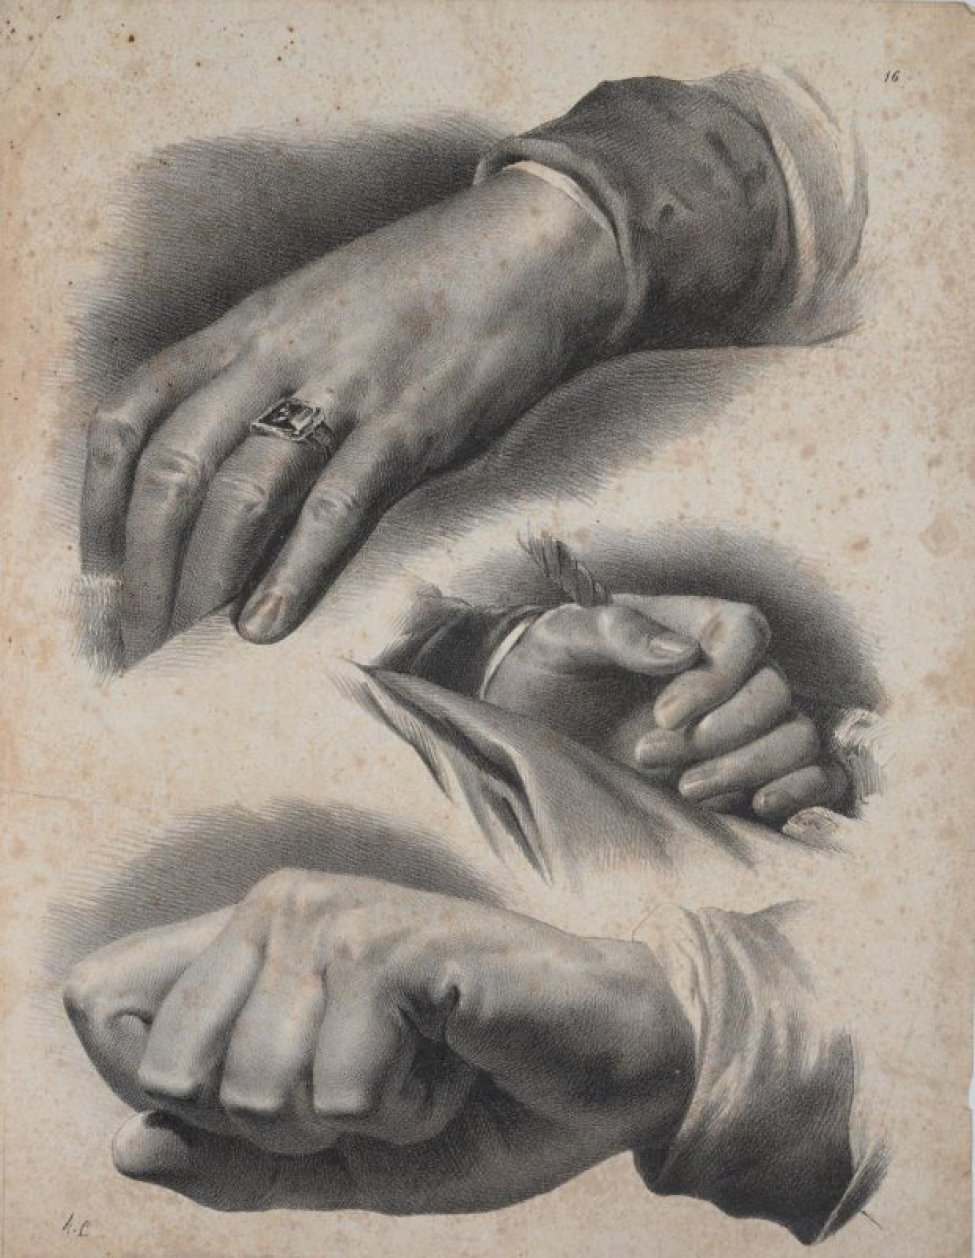 Дано три изображения кистей рук. Вверху - лежащая  рука с кольцом на безымянном пальце, в центре листа - рука с веревкой в ладони, пальца согнуты, внизу - кисть сжатая в кулак.